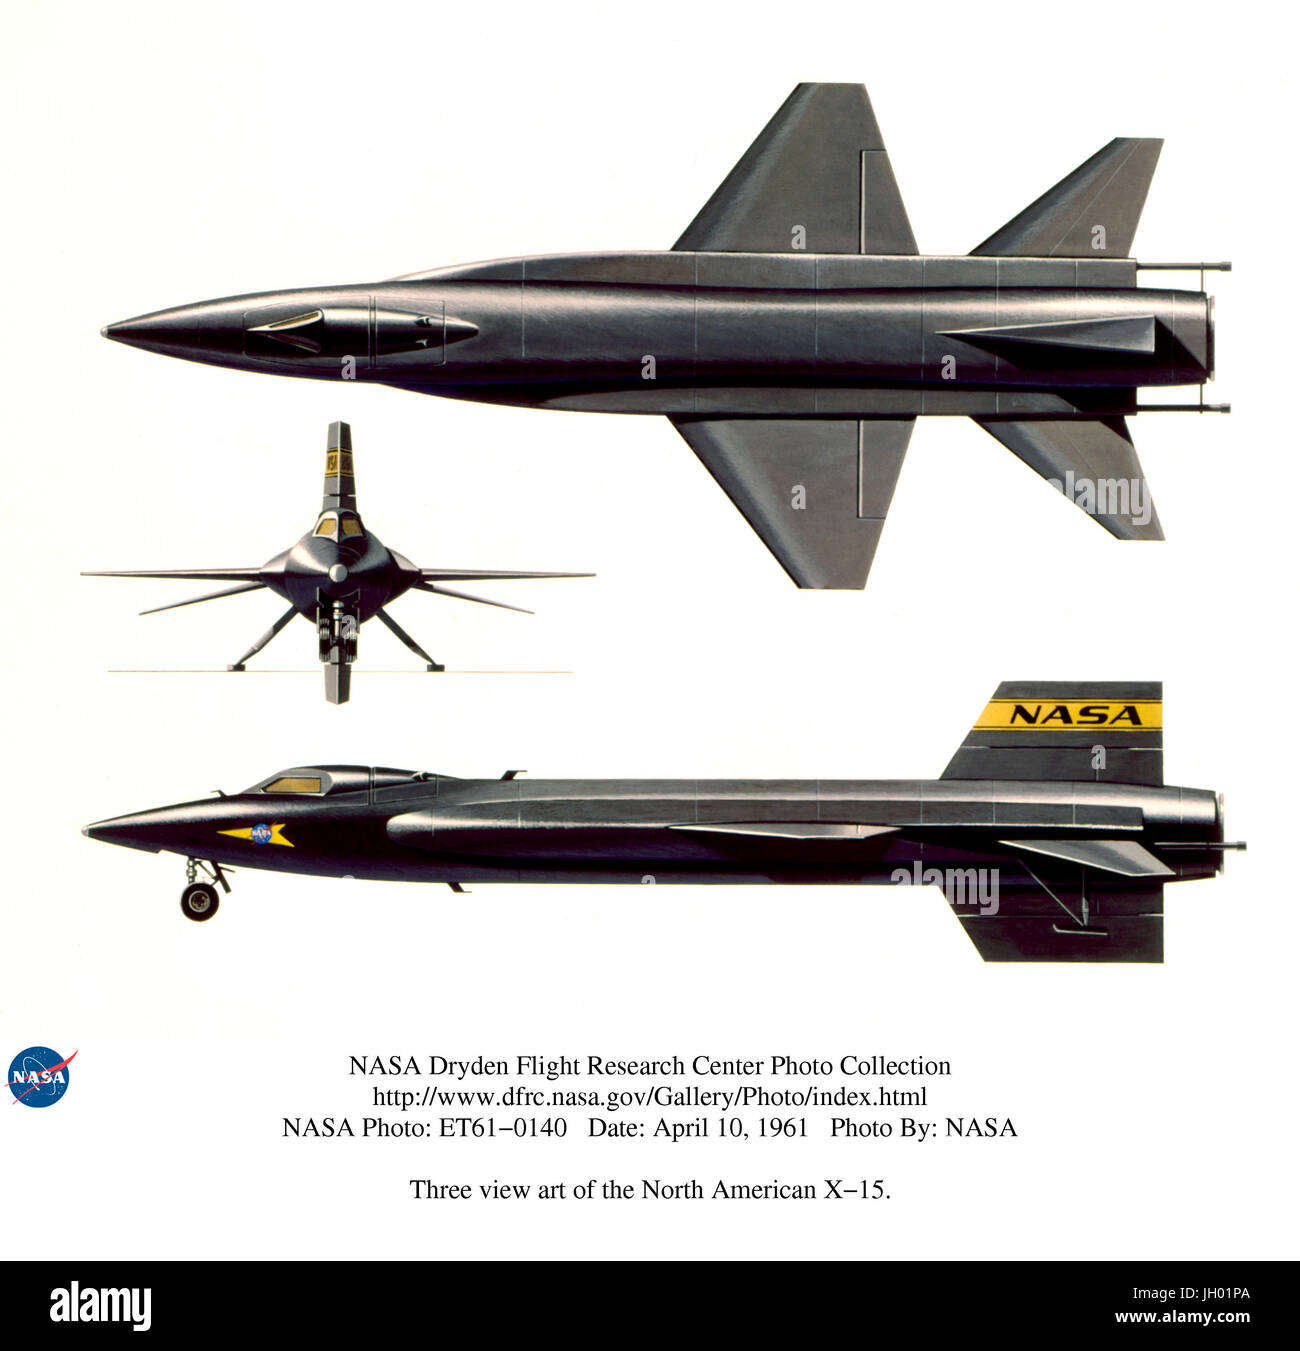 Drei Anzeigen Kunst von der North American x-15... 4/10/61.an inoffizielle Motto des Flug-Forschung in den 1940er und 1950er Jahren war "höher und schneller." In den späten 1950er Jahren war die letzte Grenze dieses Ziels Hyperschallflug (Mach 5 +) an den Rand des Weltraums. Es wäre einen großen Sprung in Luftfahrttechnik, Lebenserhaltungssystemen und Flugplanung erforderlich. Das North American x-15 Raketenflugzeug wurde gebaut, um diese Herausforderung zu meistern. Es wurde entwickelt, um bei Geschwindigkeiten bis Mach 6 und Höhen fliegen bis zu 250.000 ft. Das Flugzeug ging auf eine Höchstgeschwindigkeit von Mach 6,7 und eine Gipfelhöhe von 354.200 ft man es erreichen Stockfoto